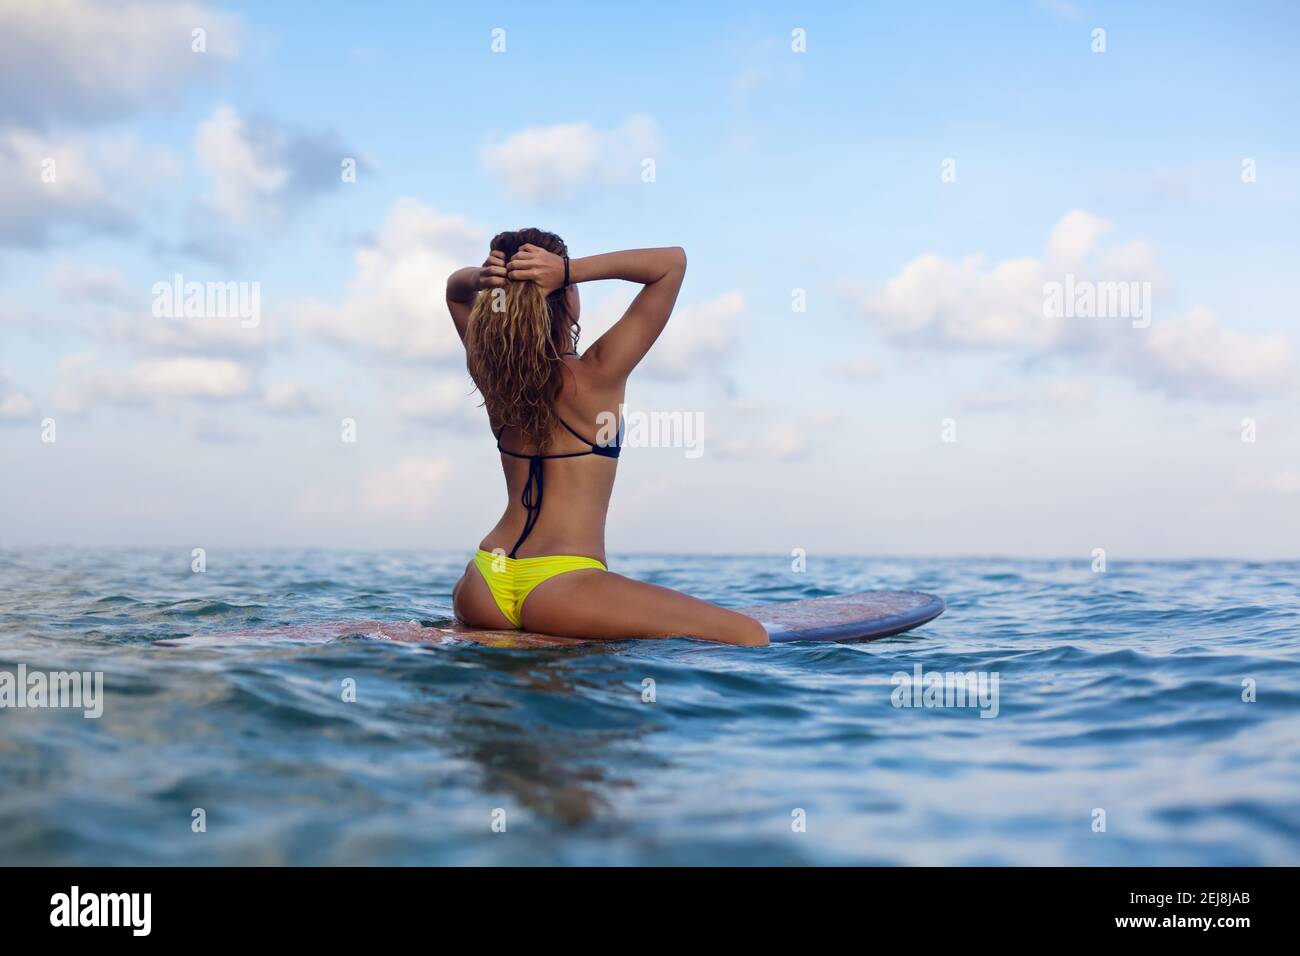 Bonne fille dans le bikini s'amuser avant de surfer surfer surfer sur  planche à voile, regarder le ciel de coucher de soleil. Les gens dans le  camp d'aventure de sport aquatique, l'activité